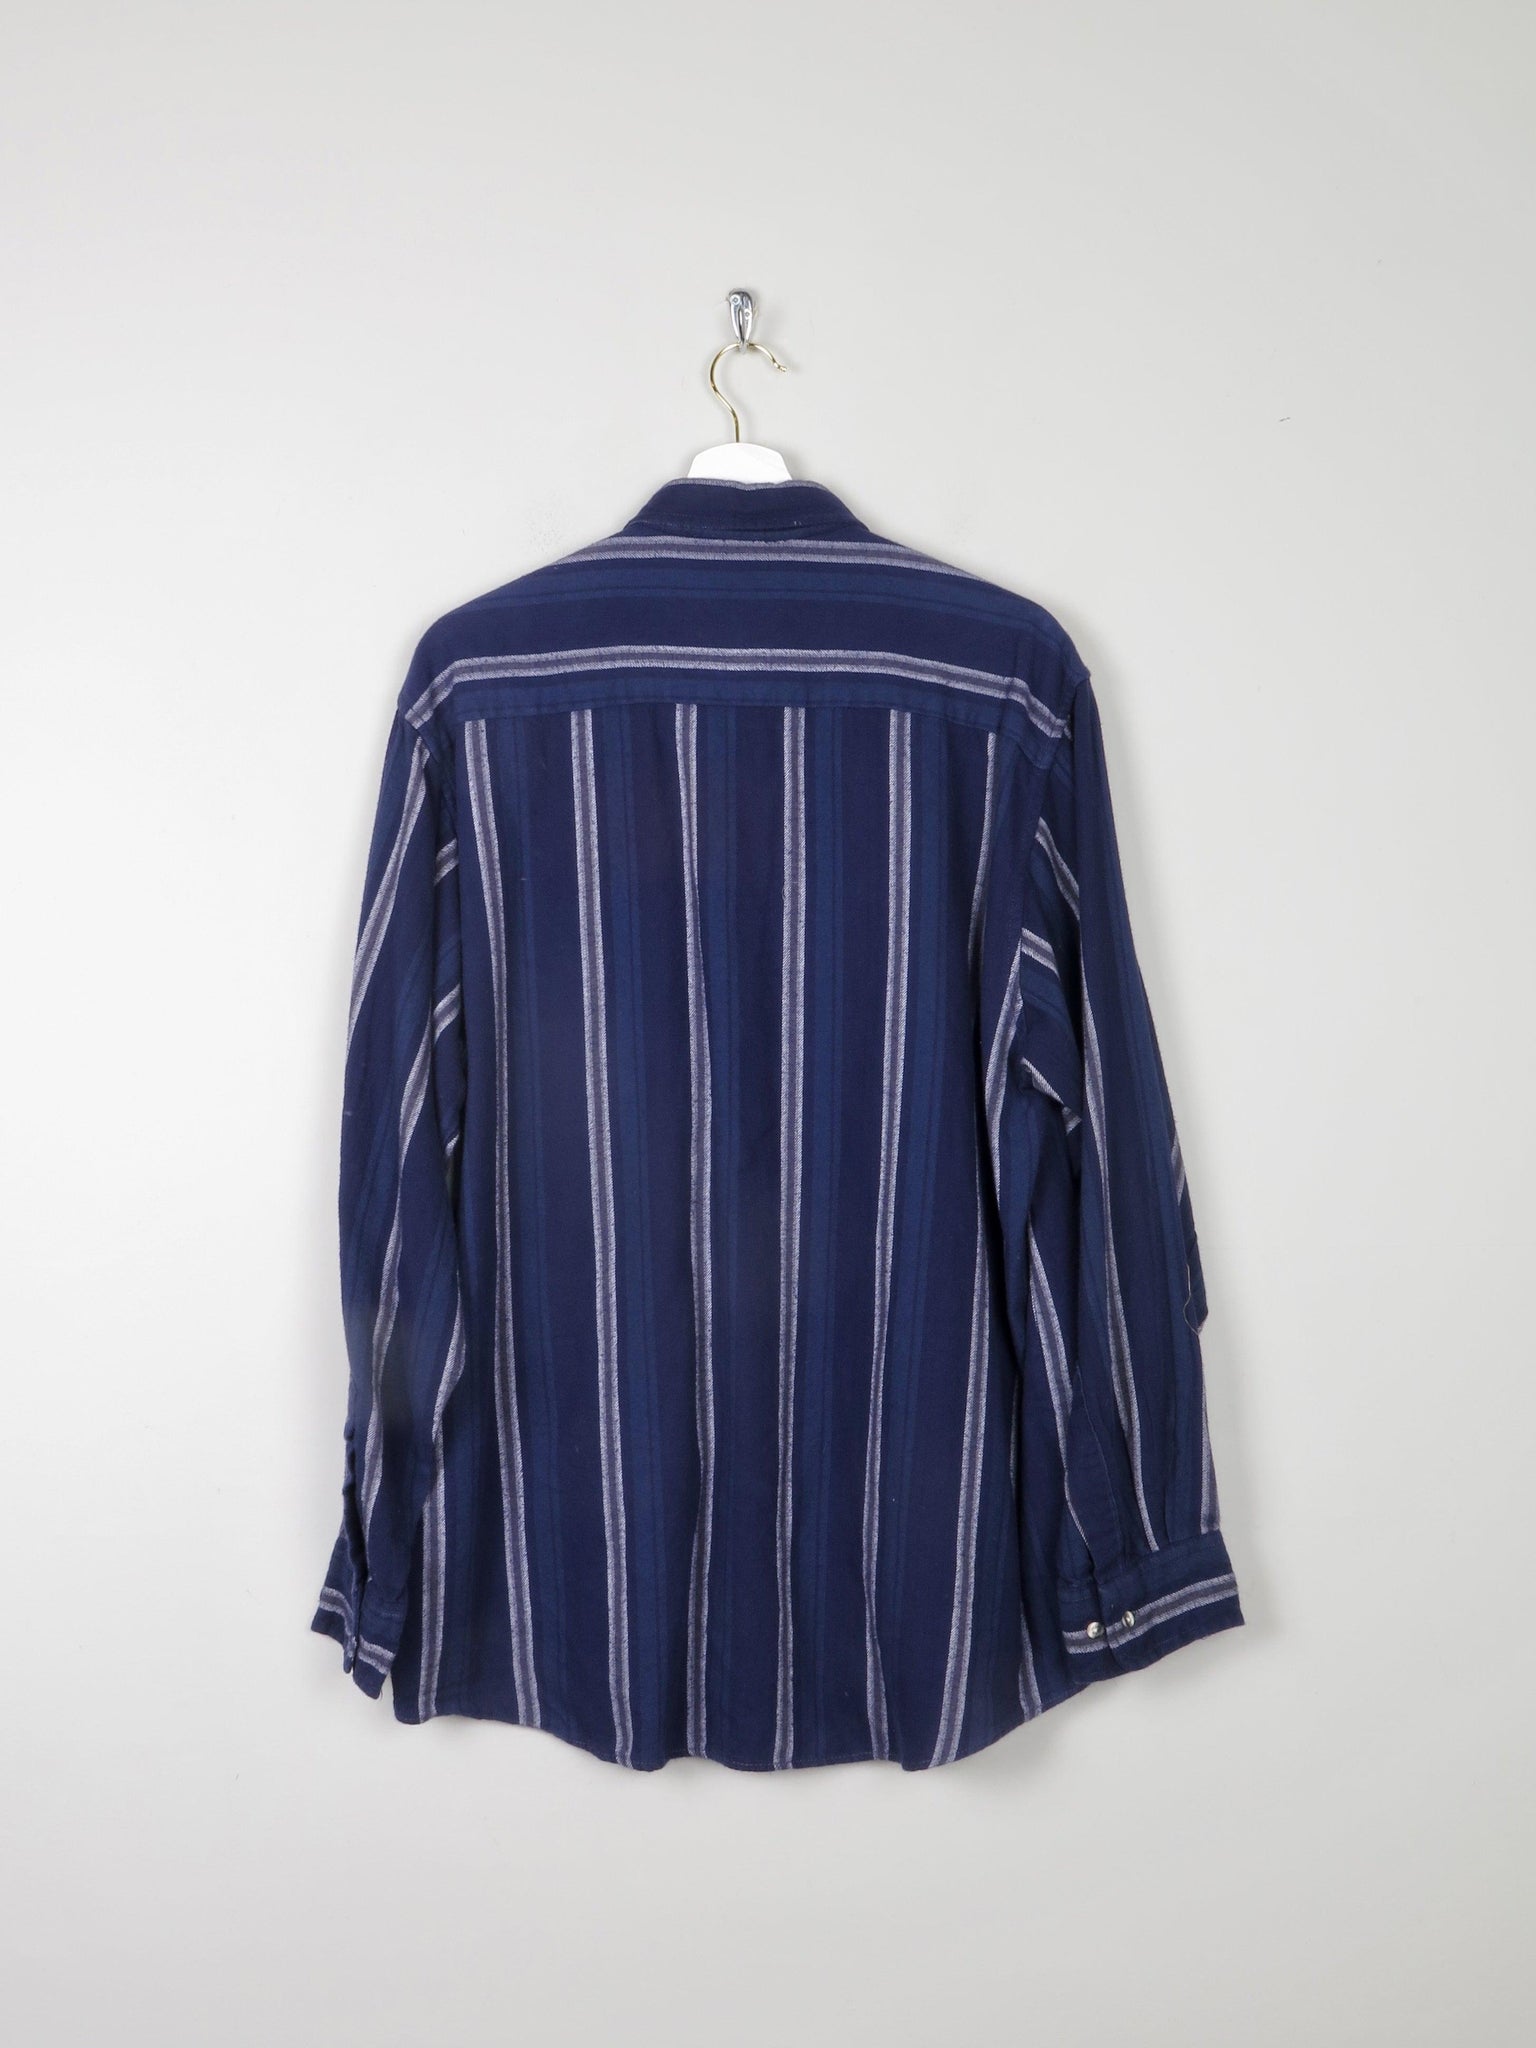 Men's Blue Striped Vintage Flannel Shirt L - The Harlequin